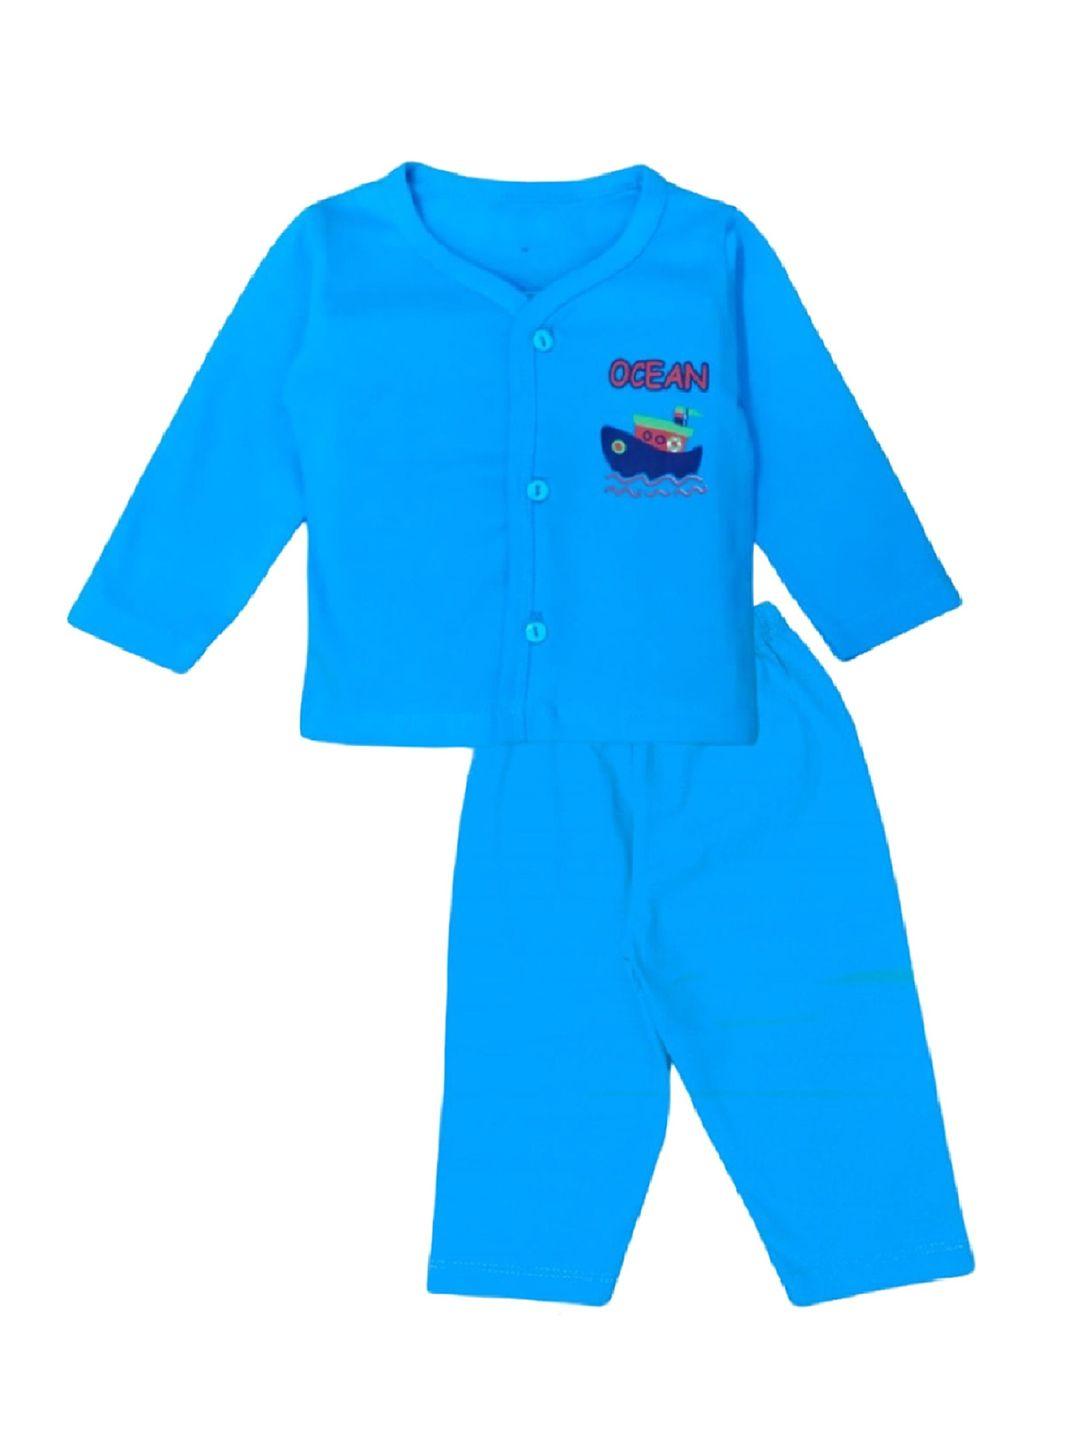 baesd unisex kids blue printed t-shirt with pyjamas